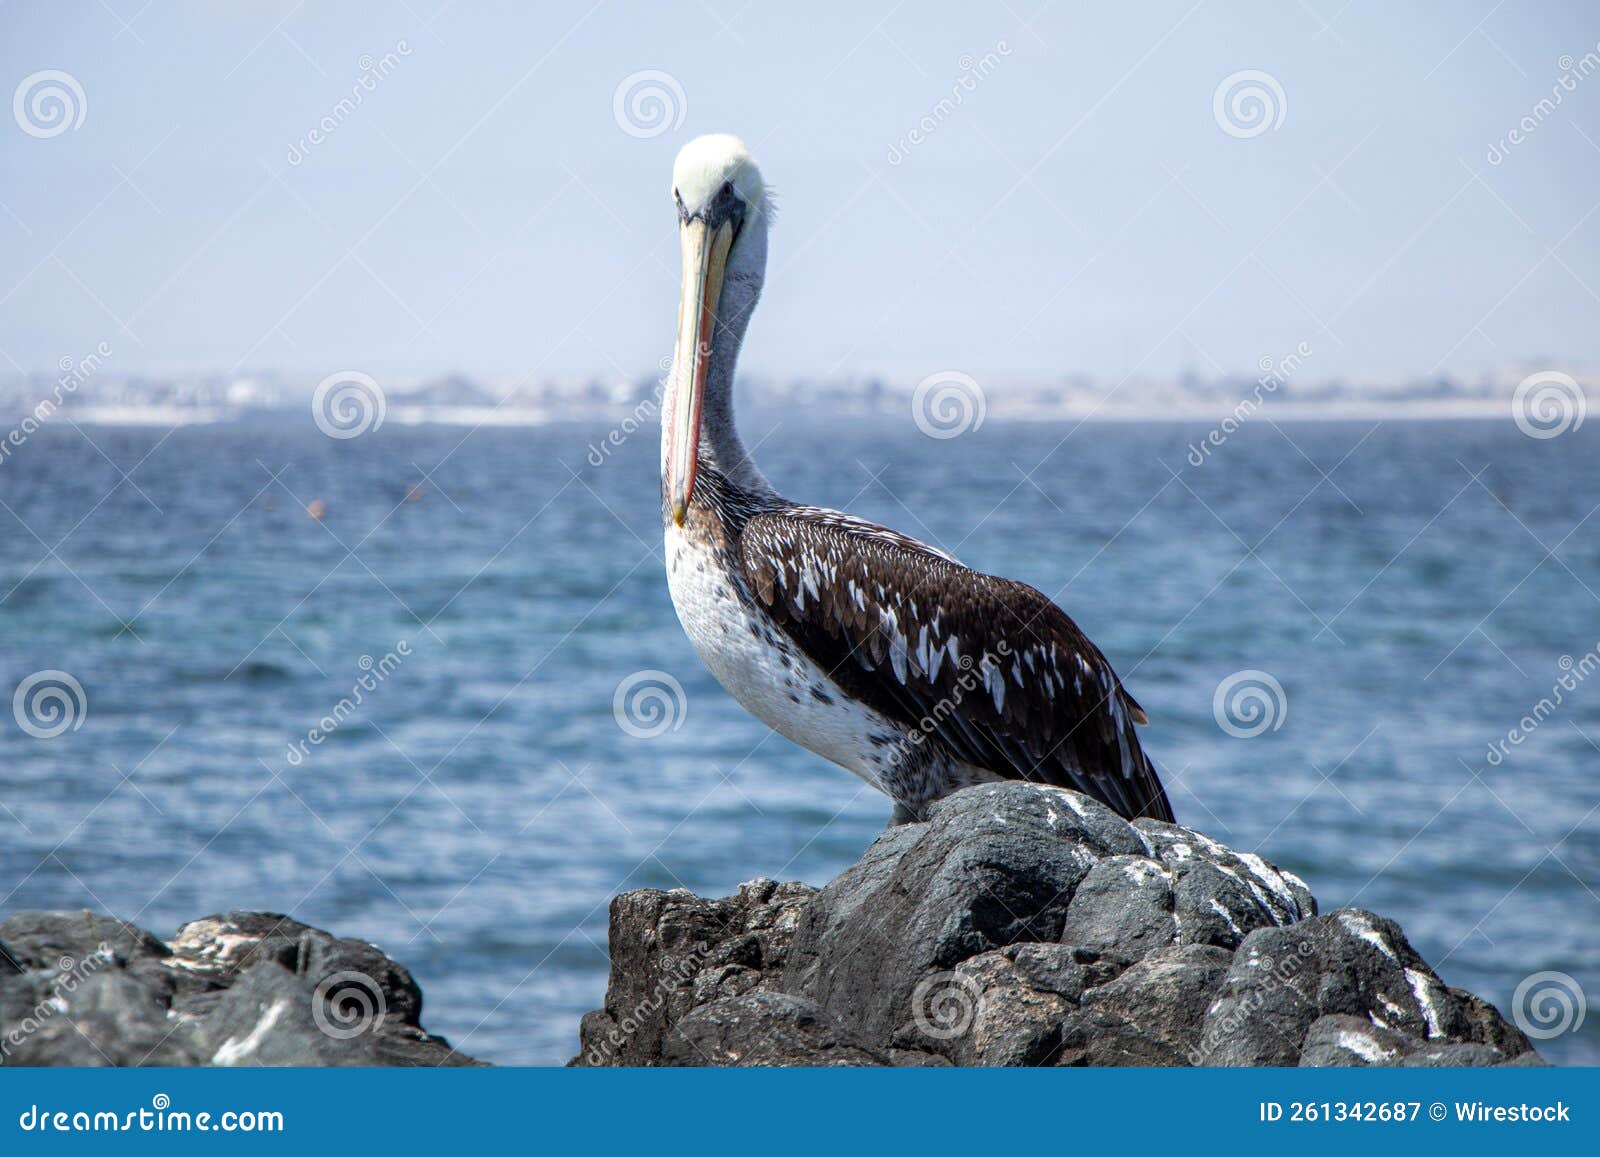 pelicano en la playa sobre rocas en bahia inglesa, chile